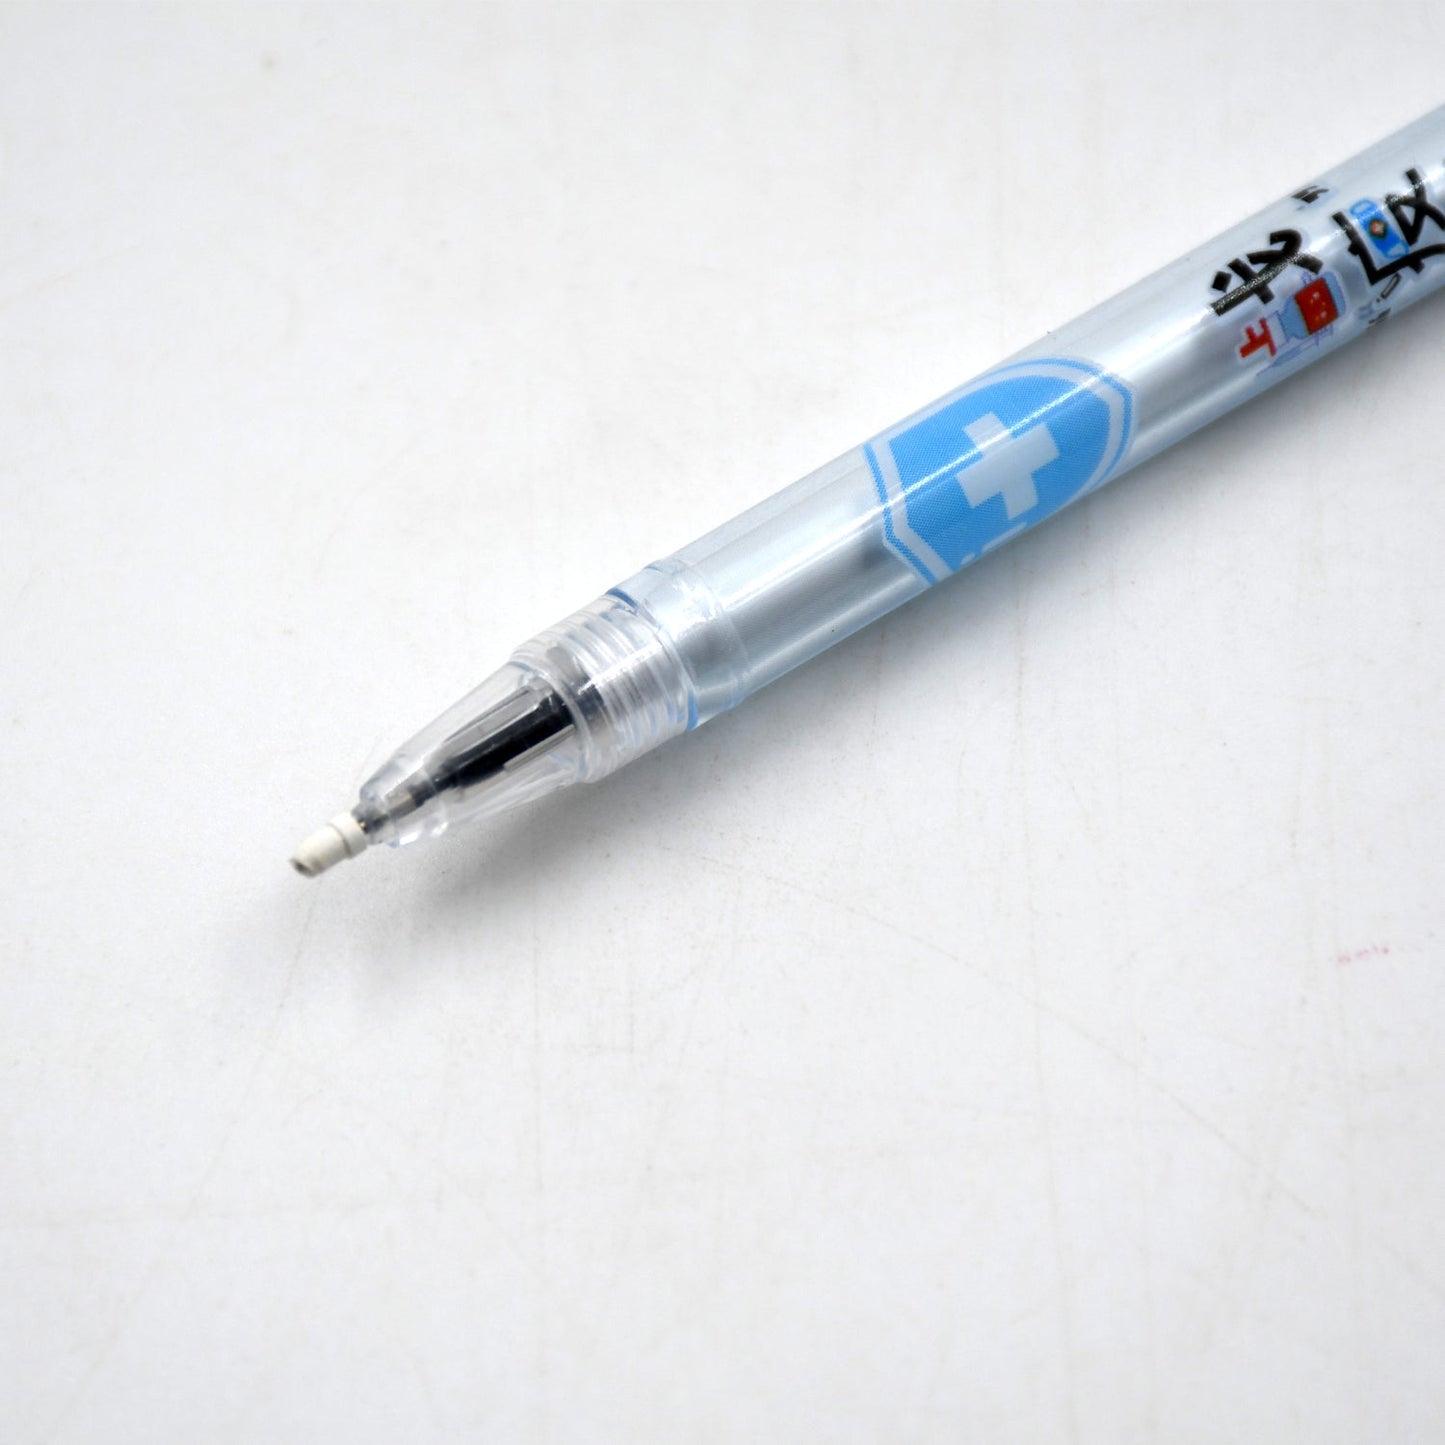 Pen For School Stationery Gift For Kids, Birthday Return Gift, Pen For Office, School Stationery Items For Kids